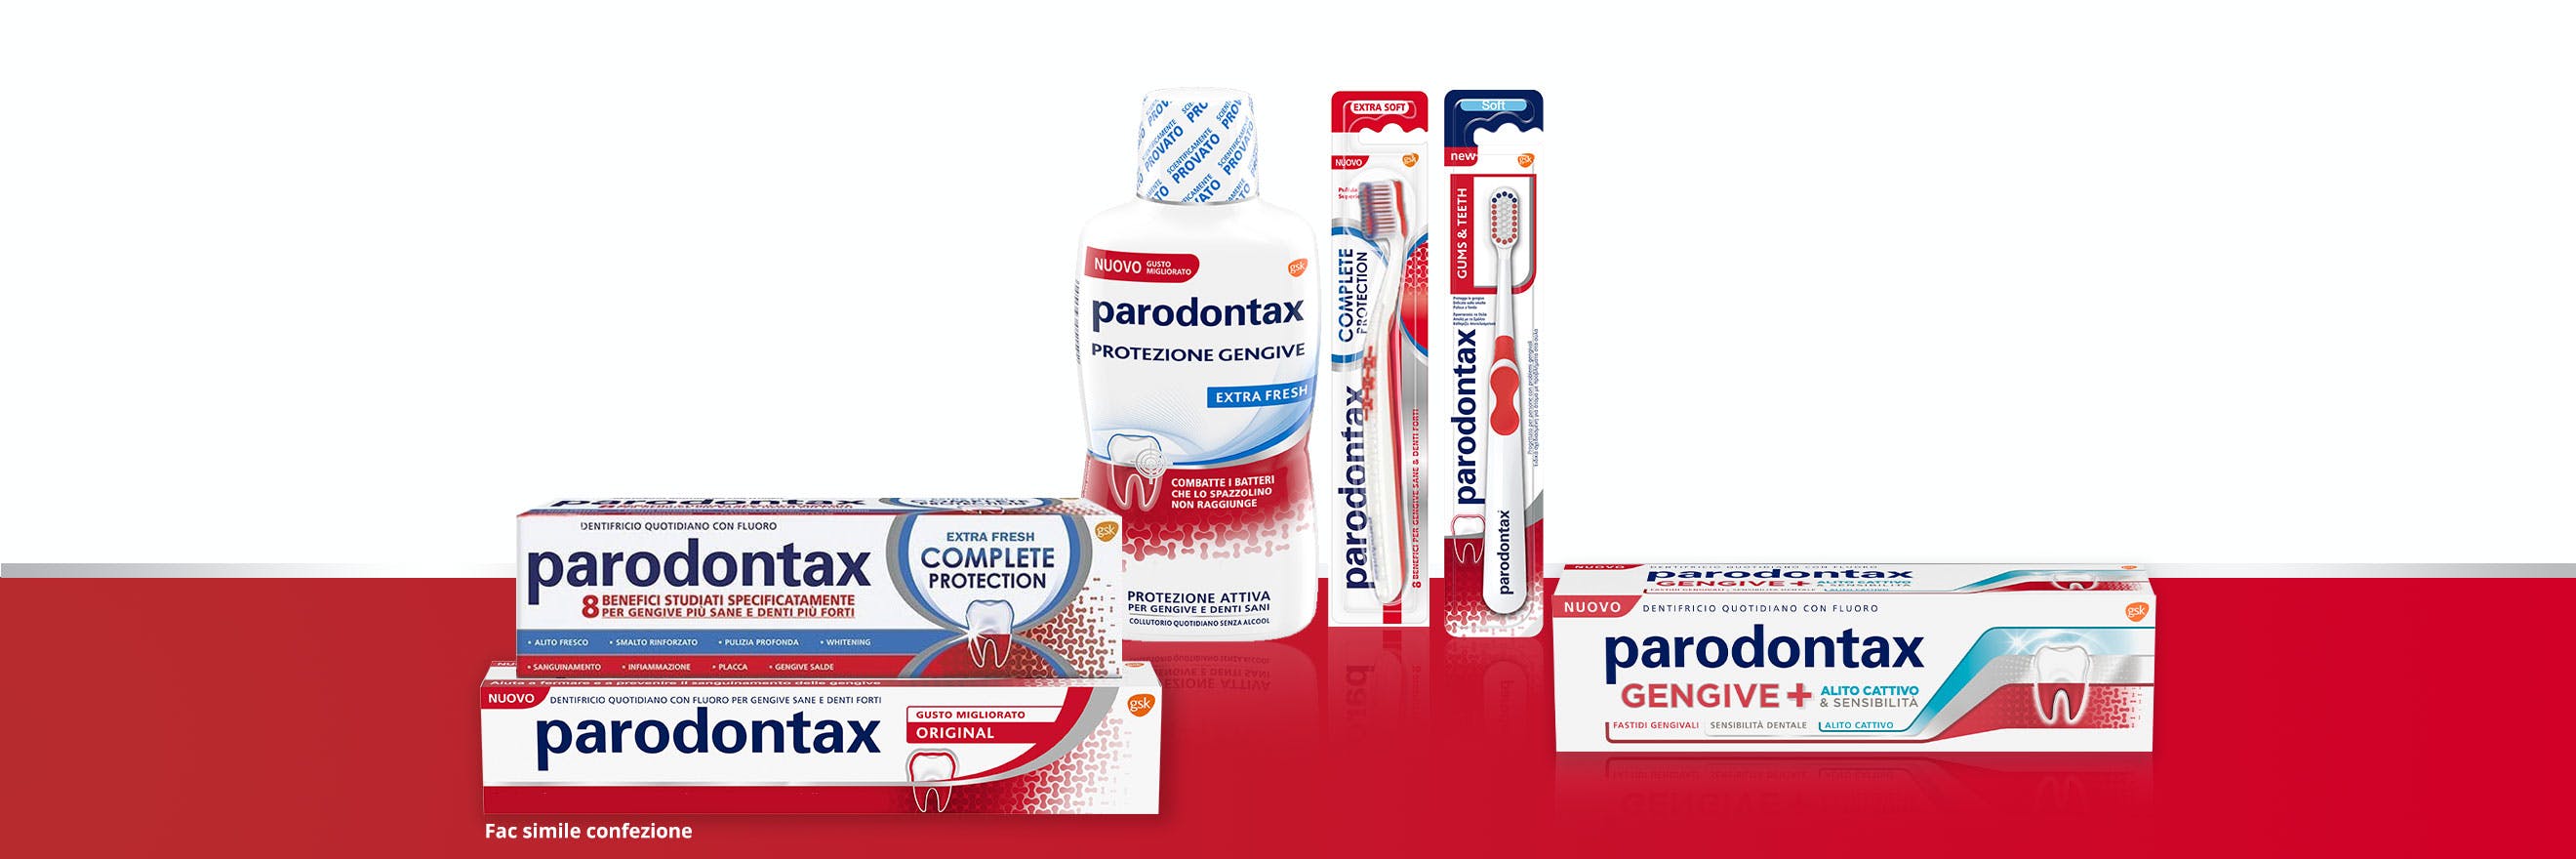 La linea di prodotti parodontax ad uso quotidiano